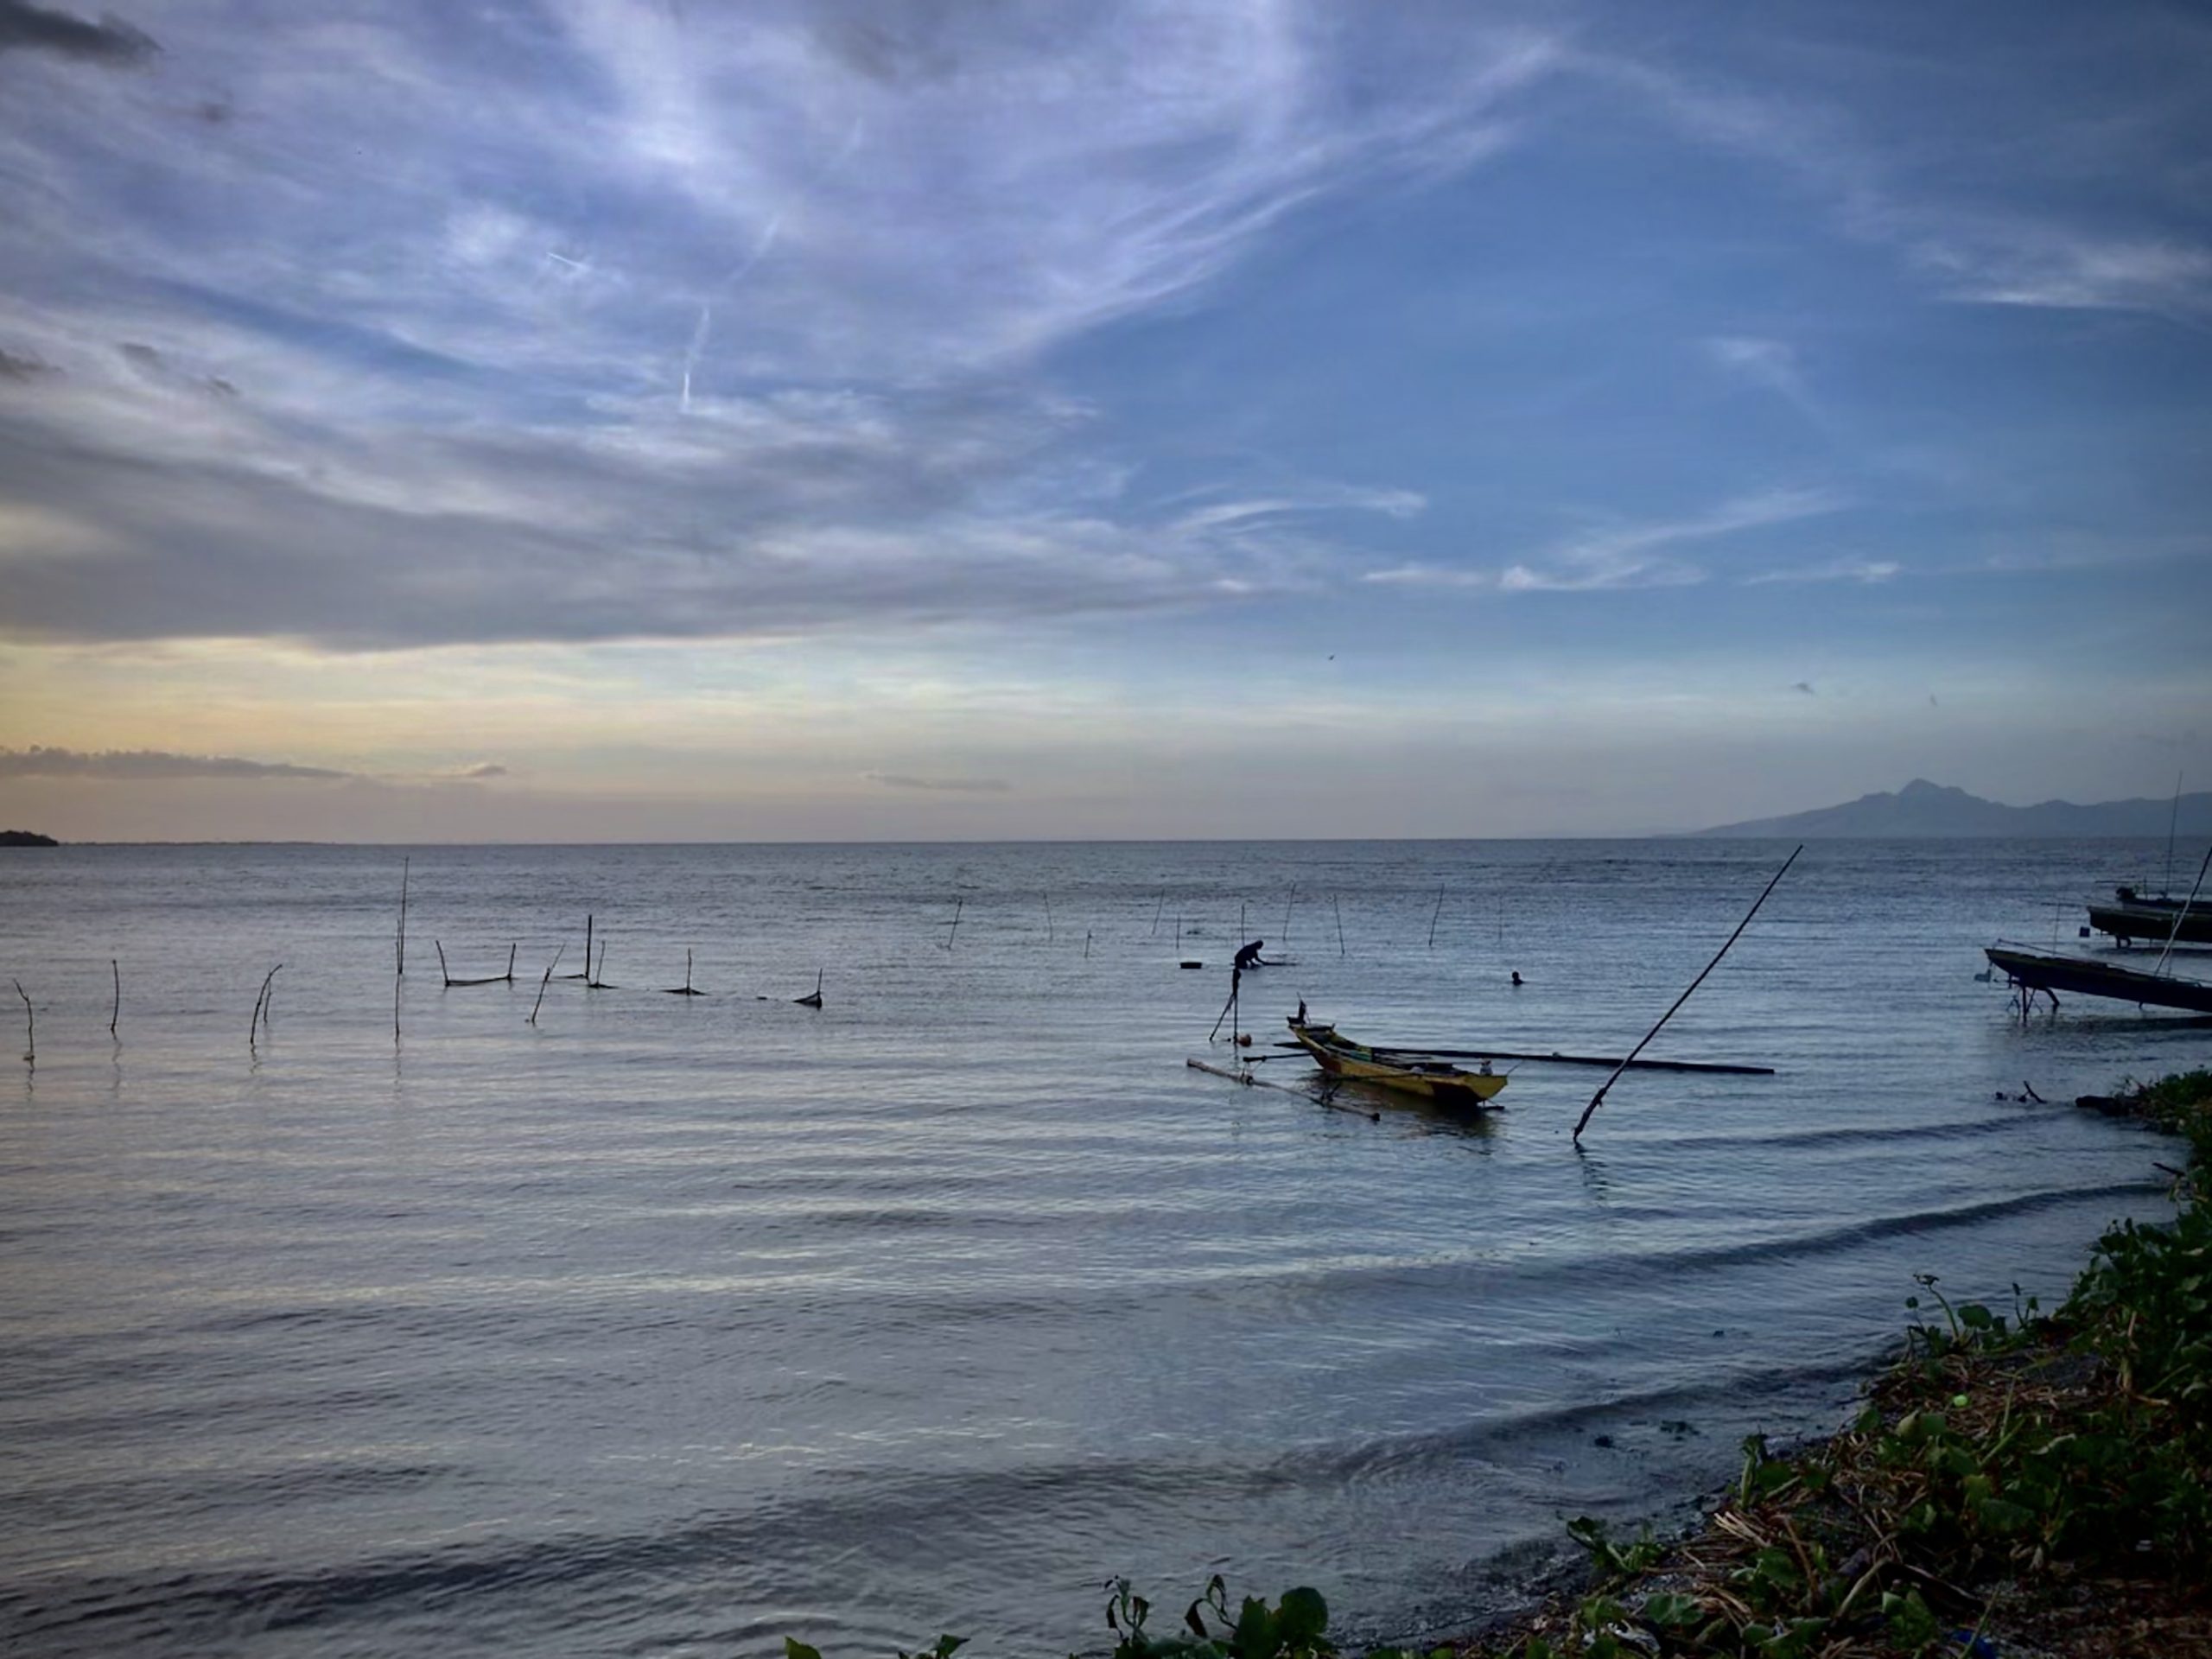 Laguna lake shore at Mayondon